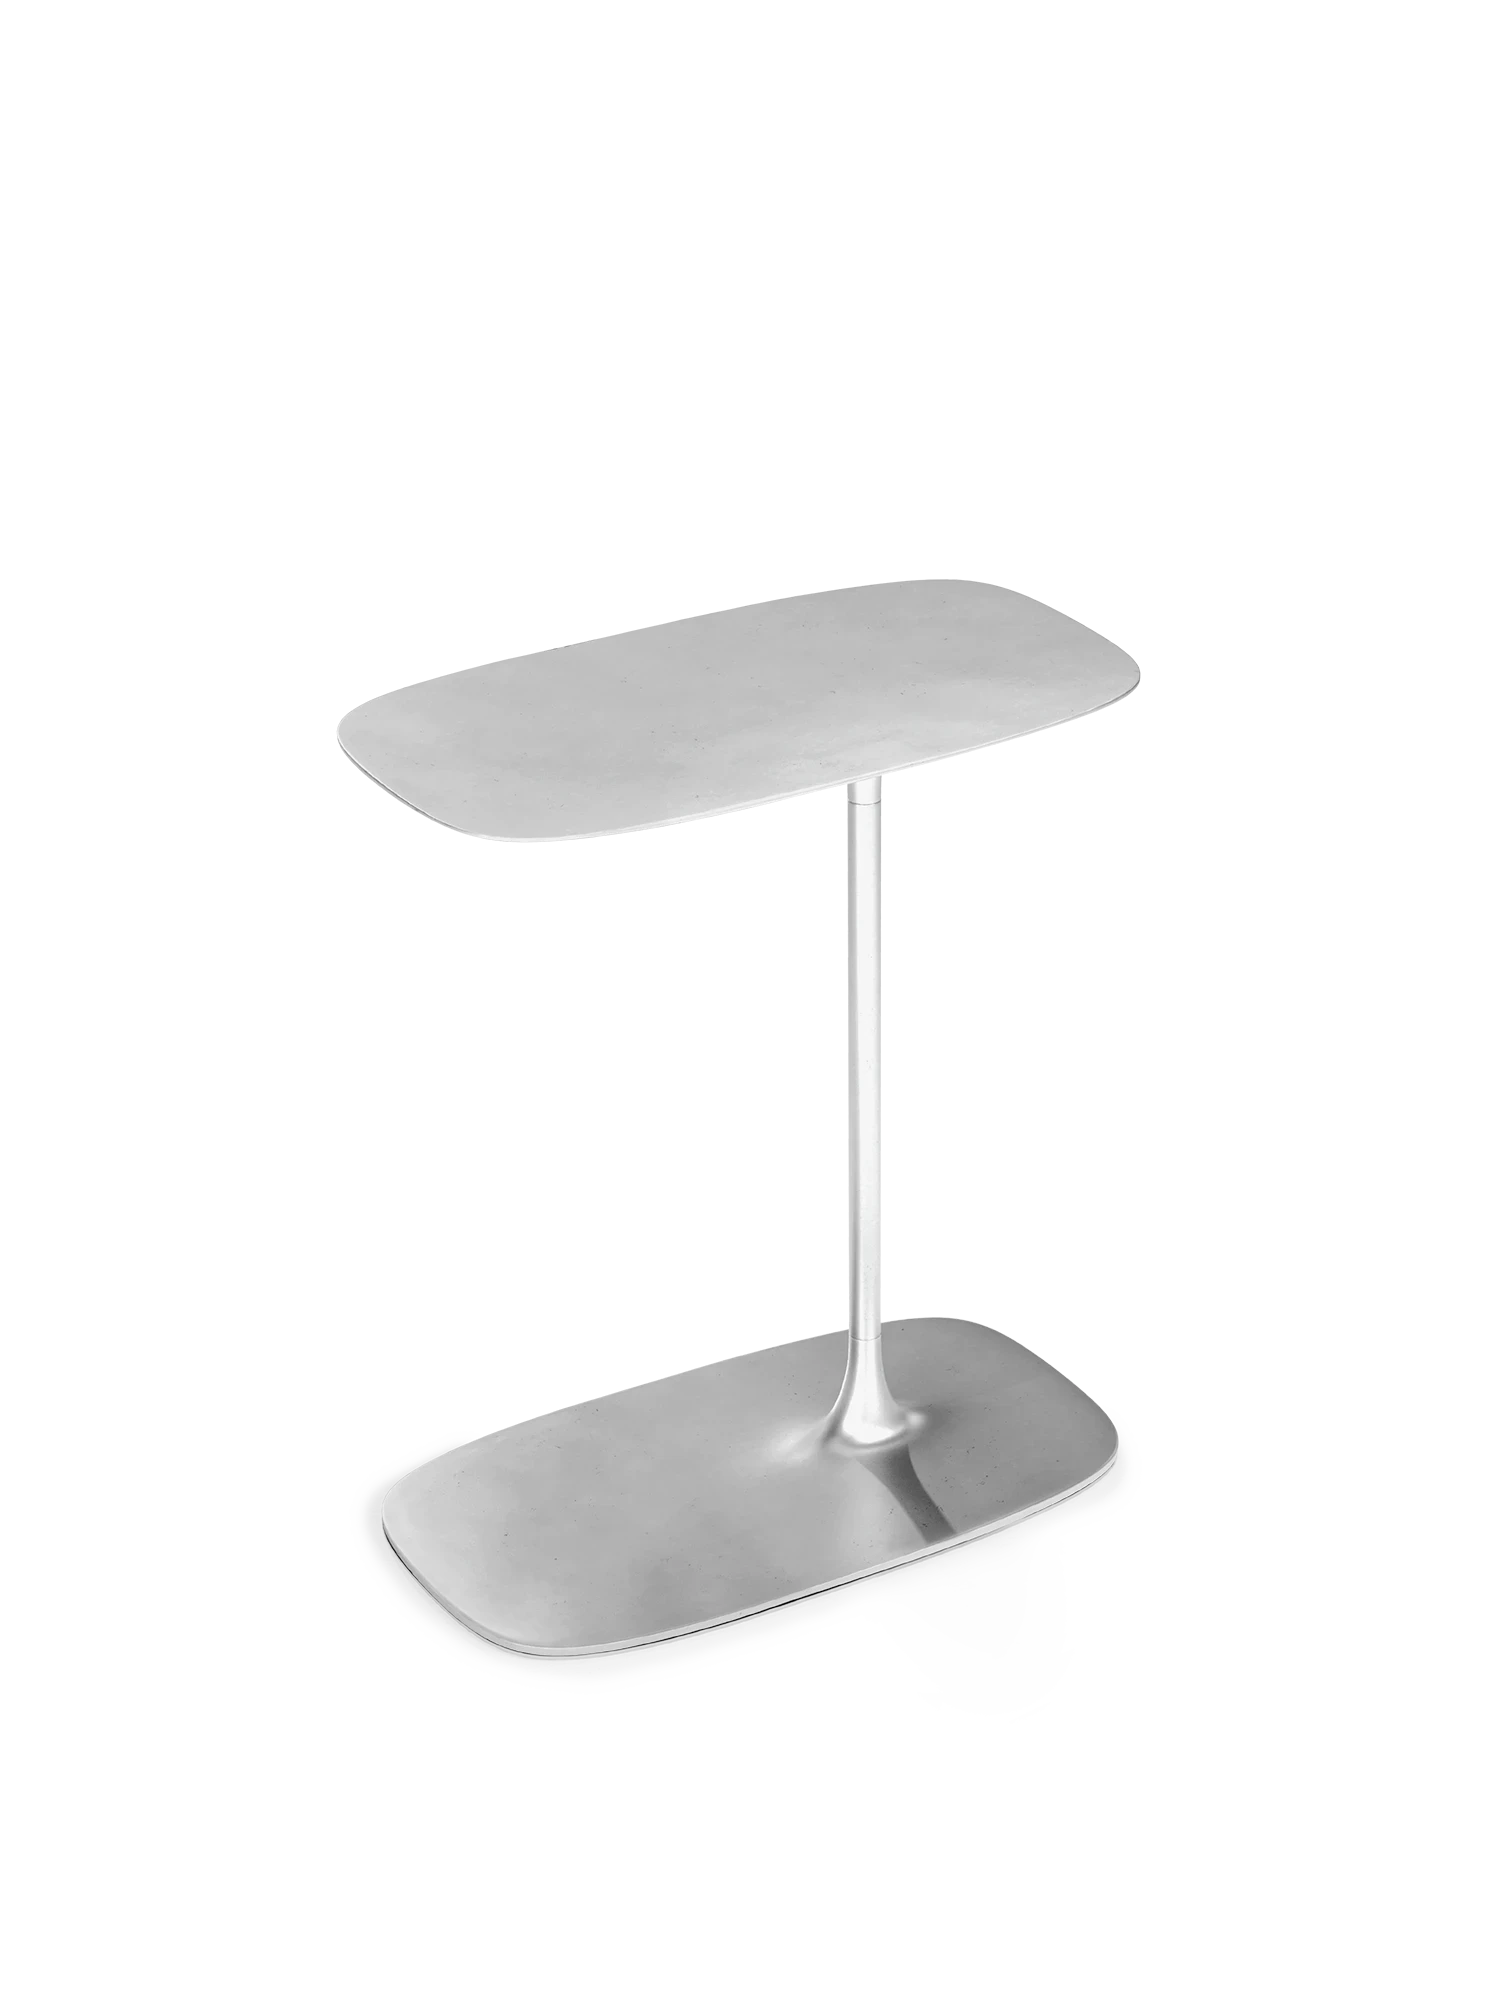 FLUID - Low Side Table